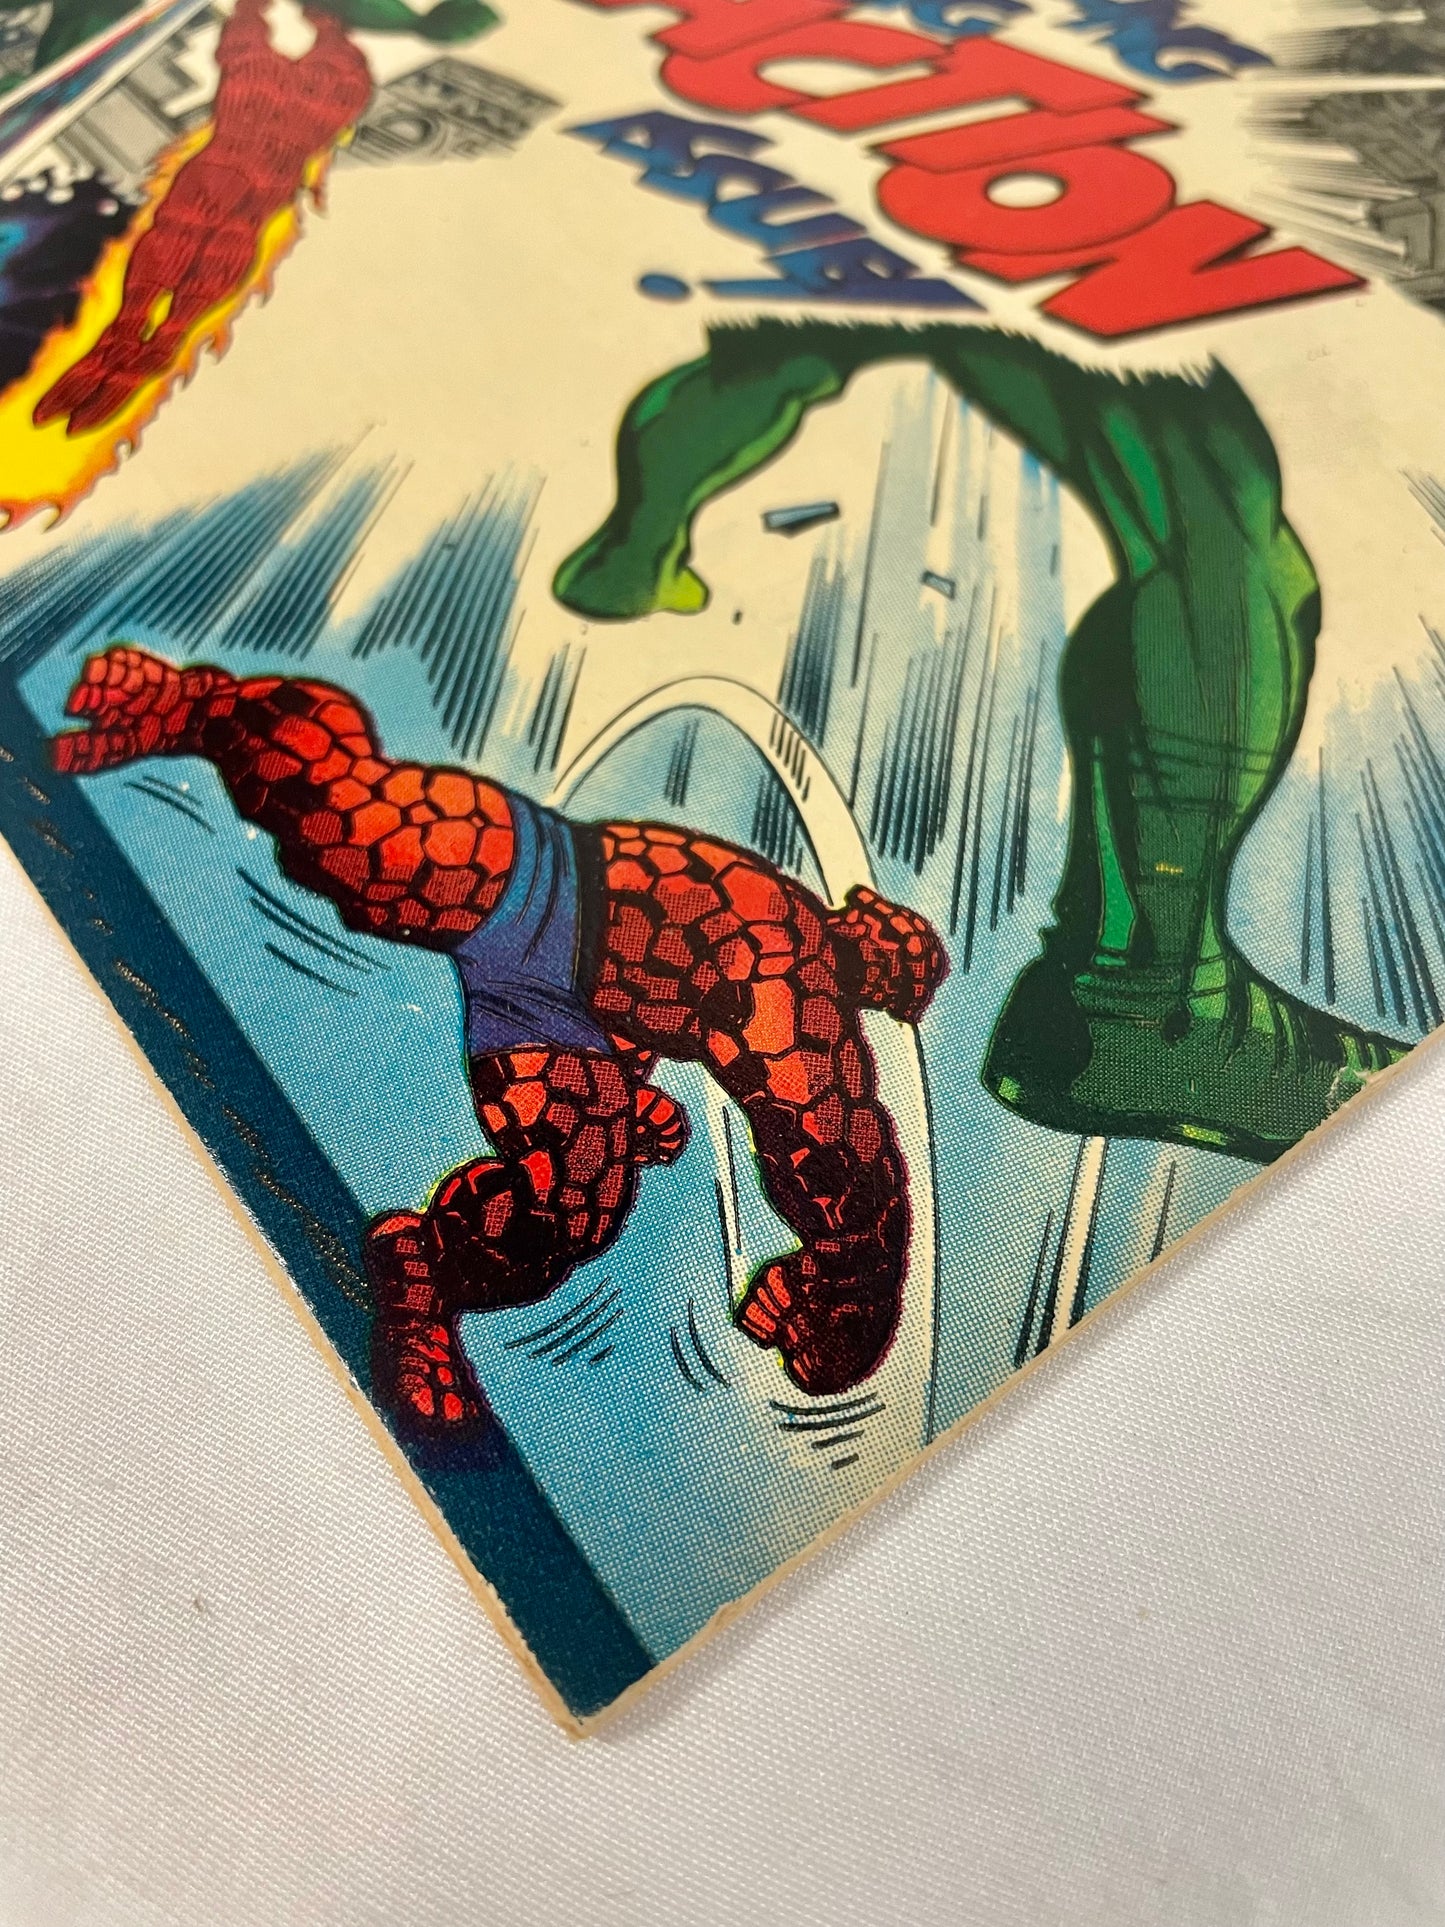 Marvel Comics Fantastic Four #71